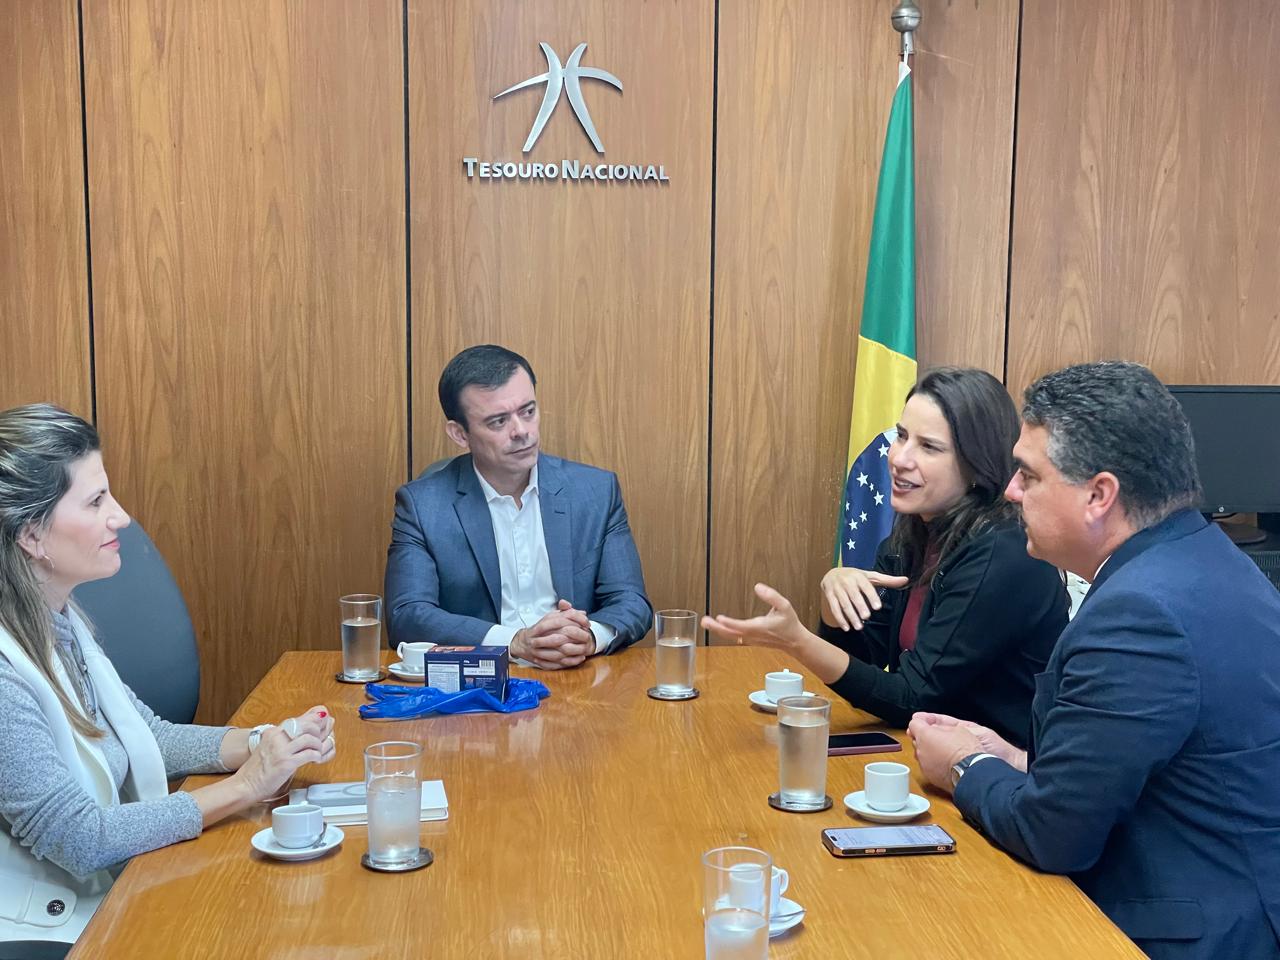  Governadora Raquel Lyra busca investimentos em abastecimento de água durante reunião com secretário do Tesouro Nacional em Brasília